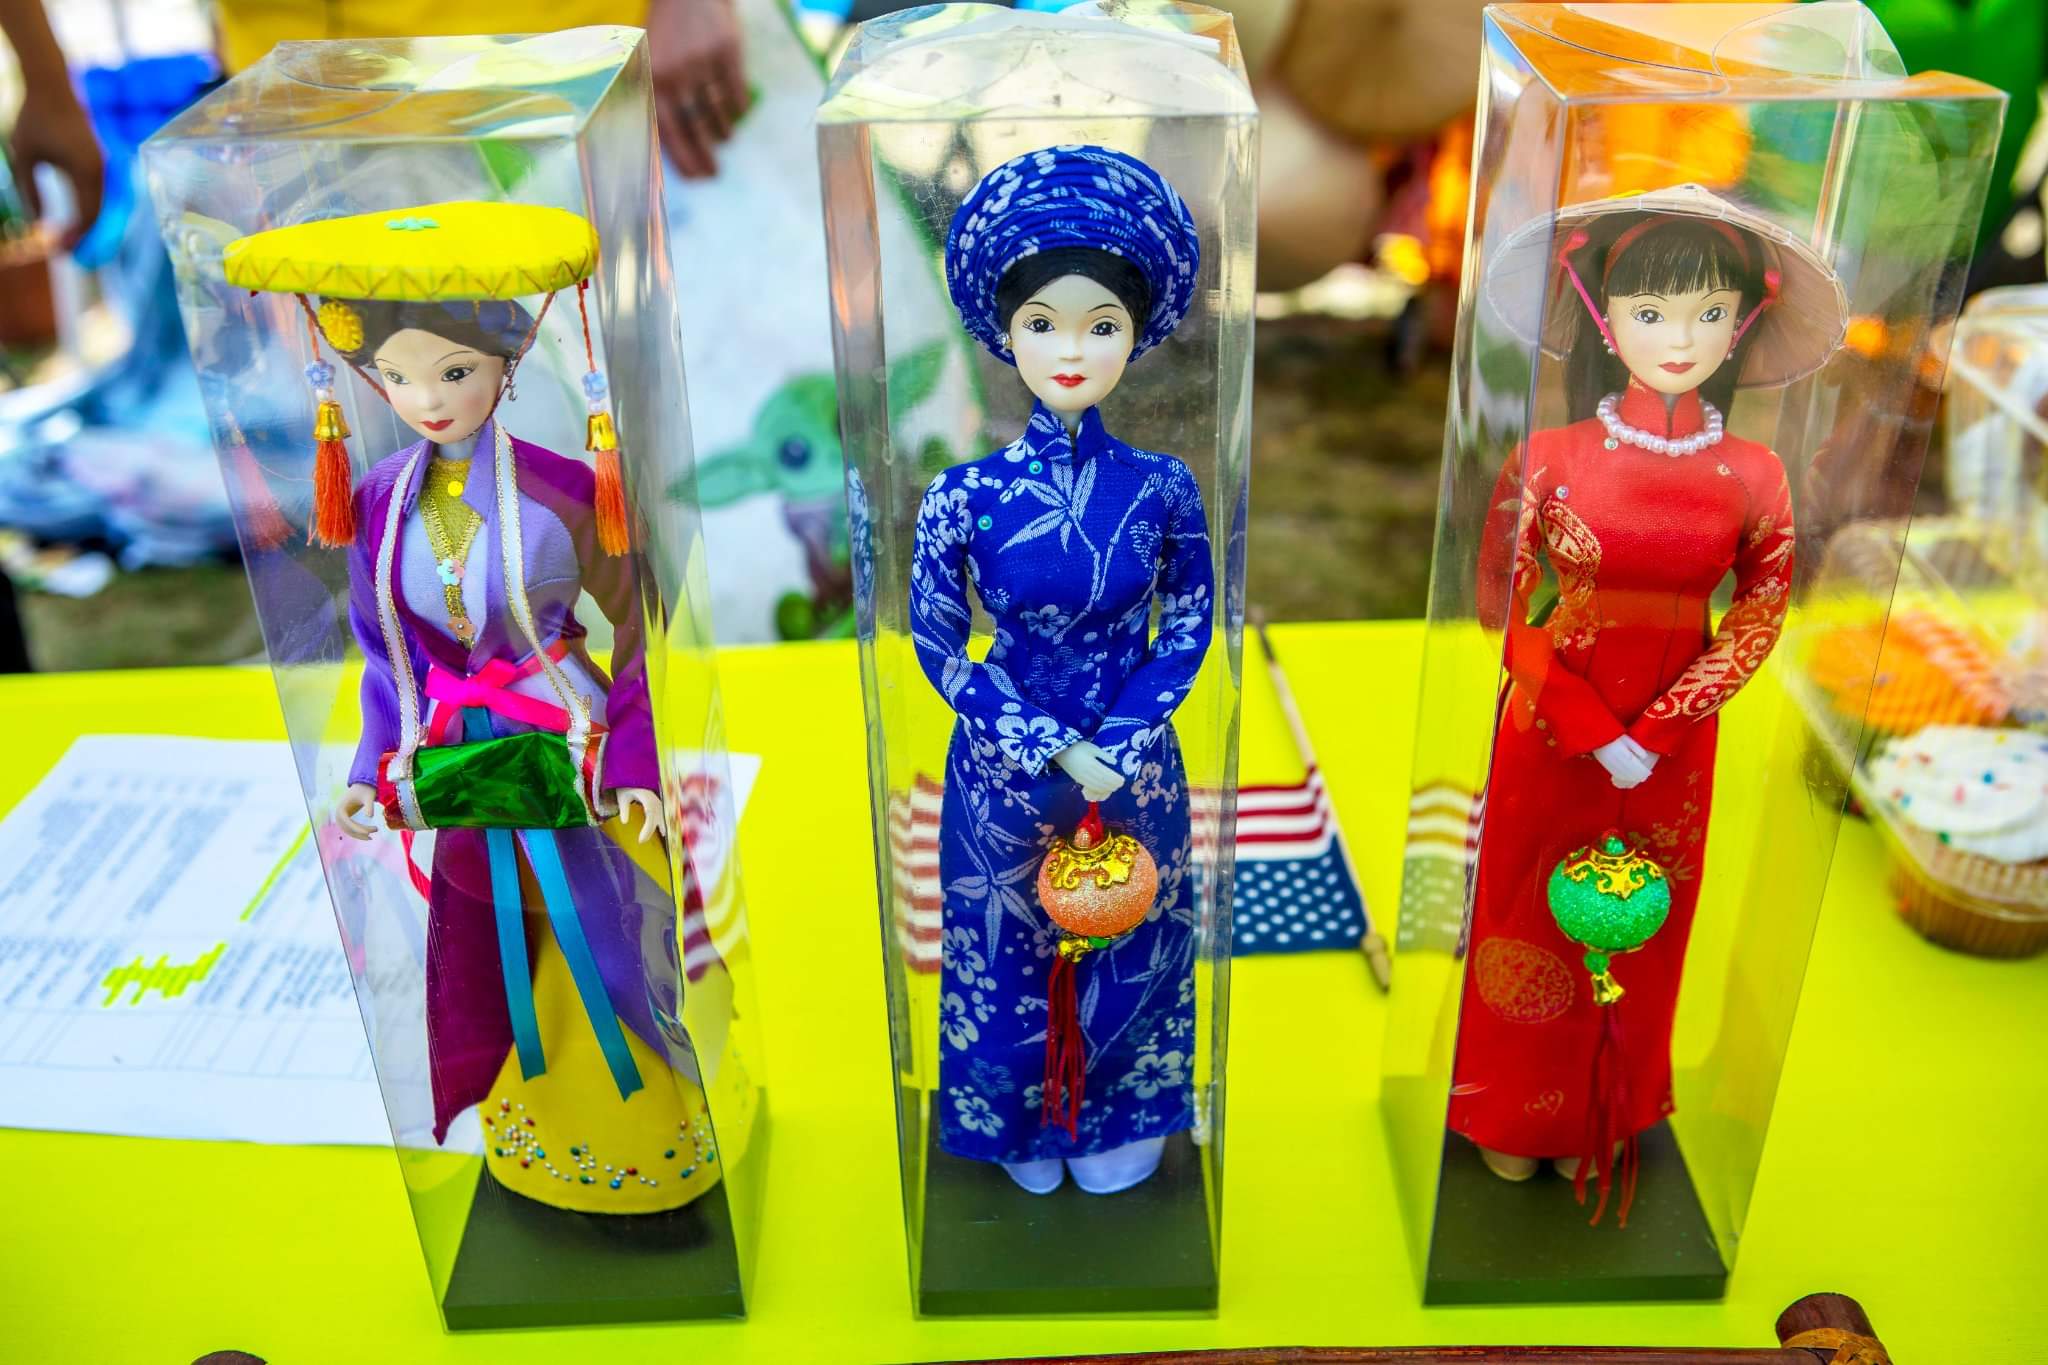 Vietnamese cultural displays